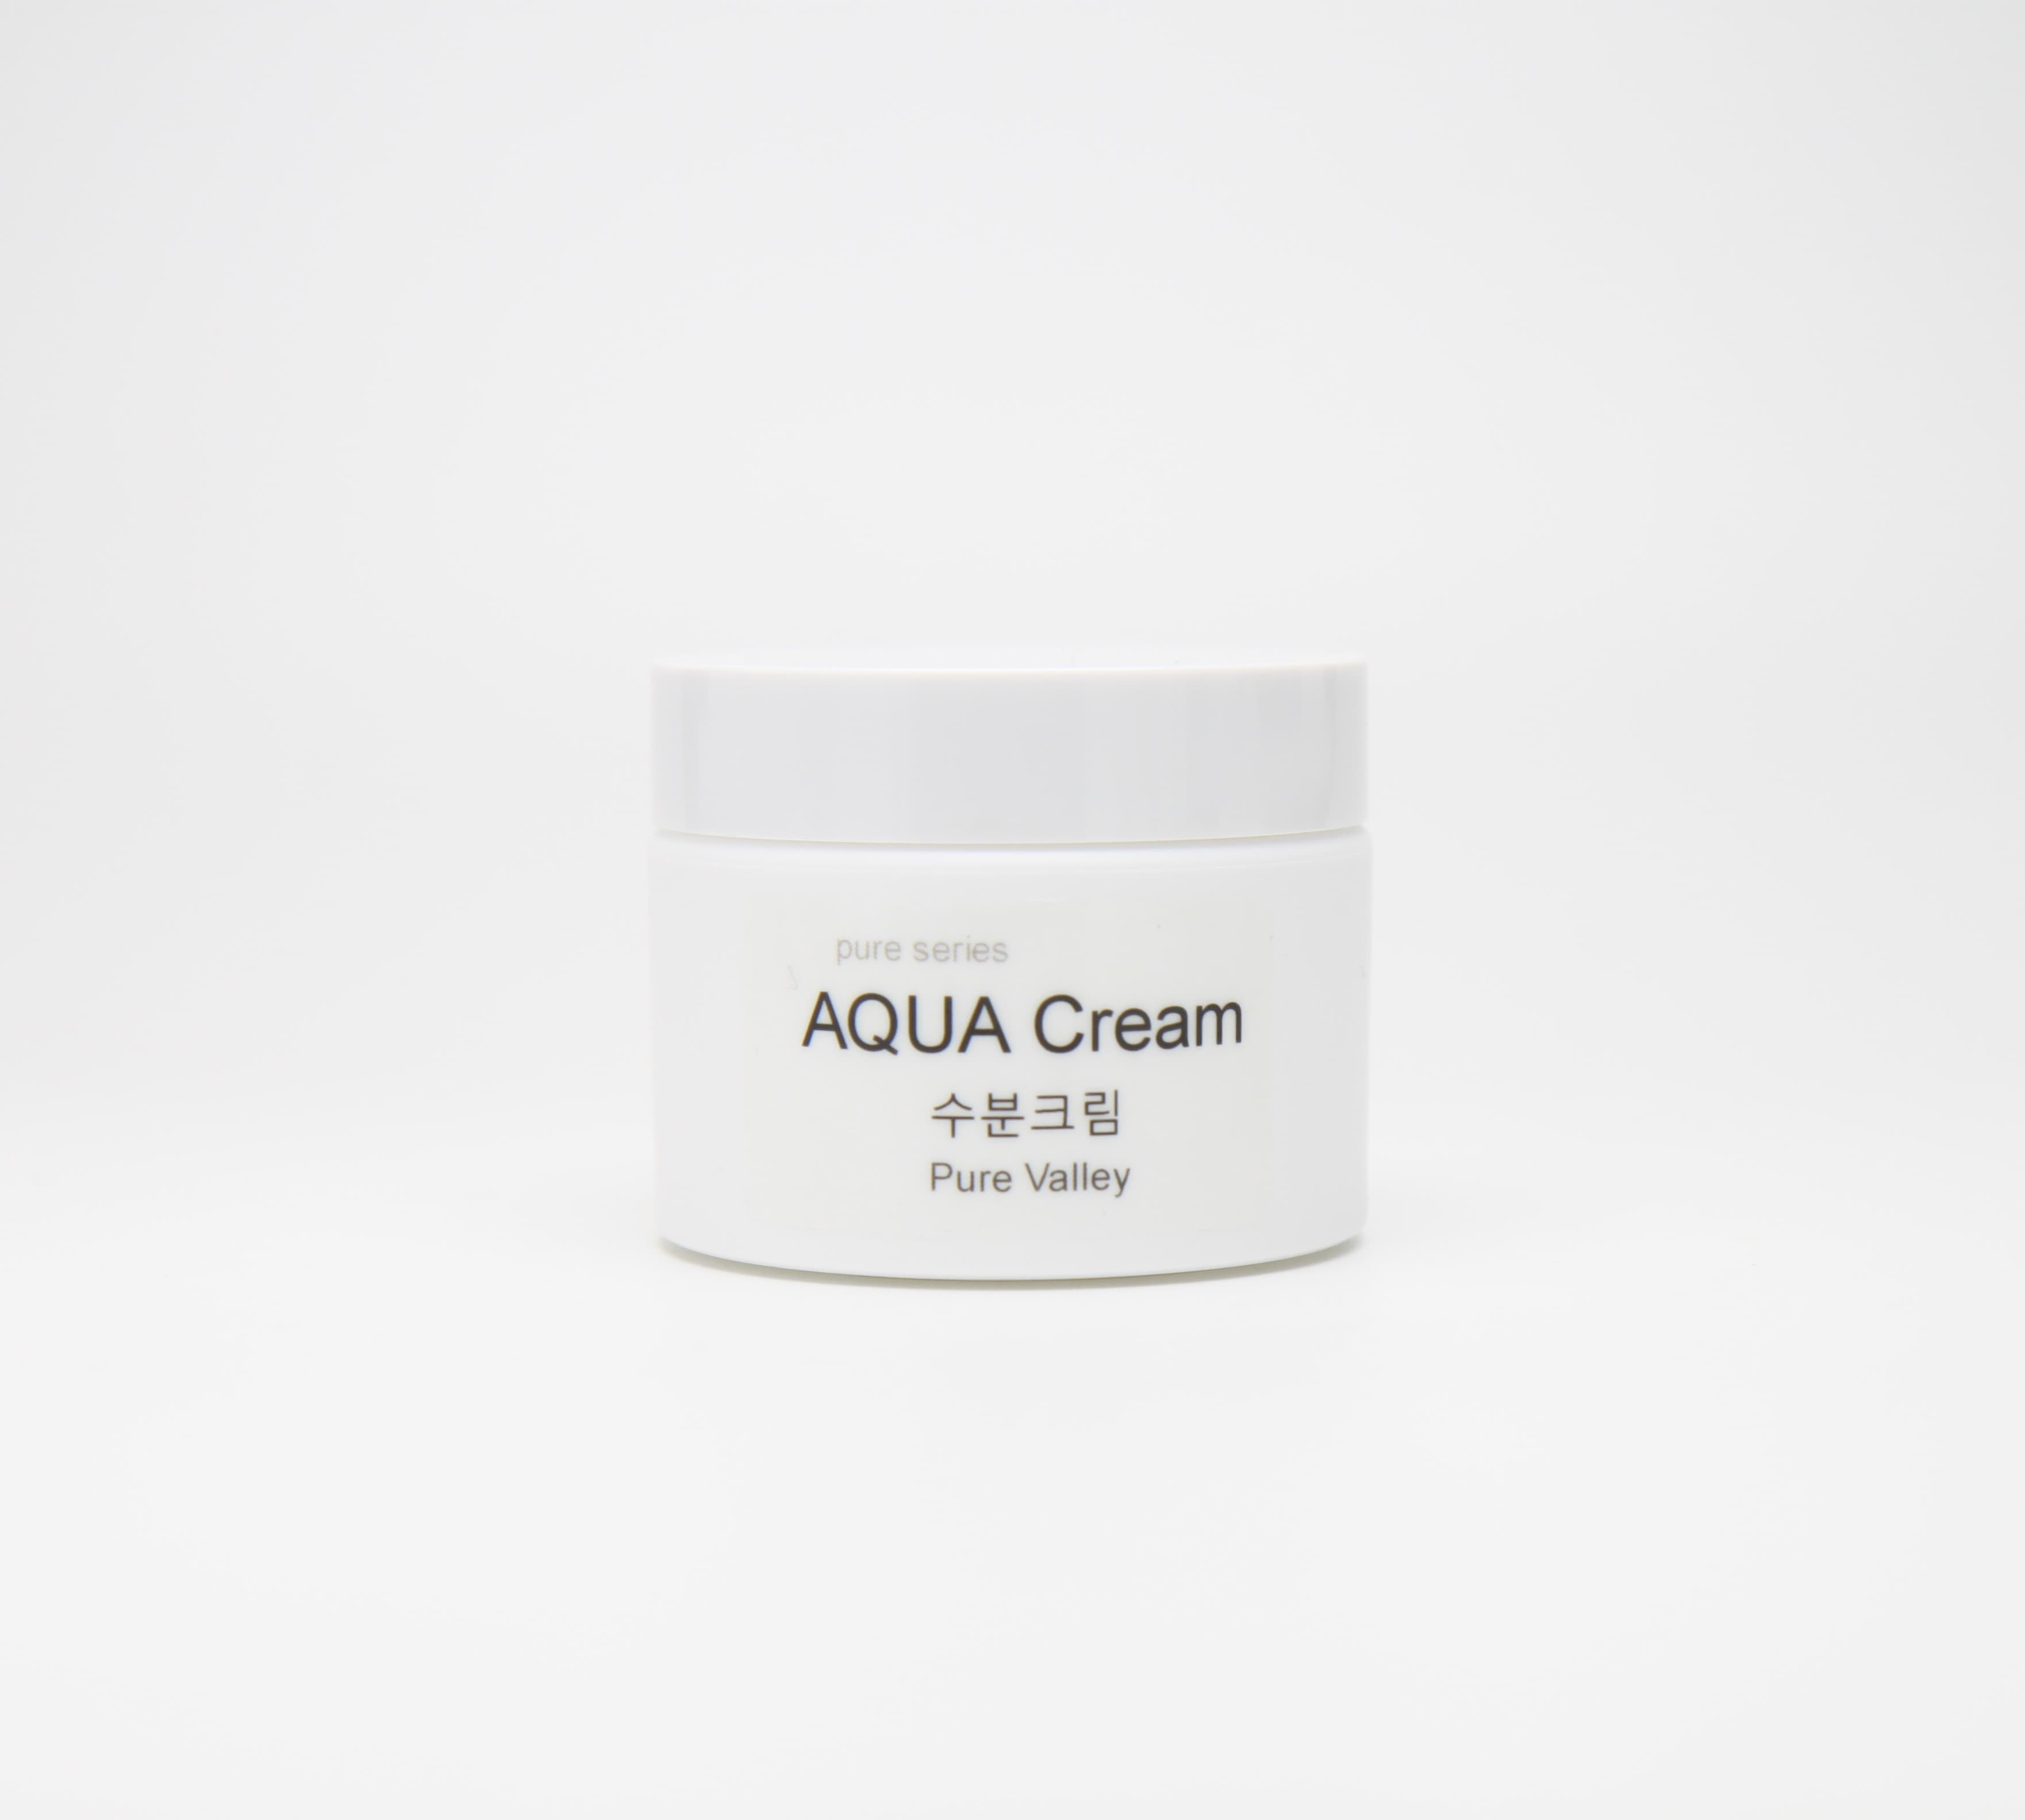 AQUA Cream